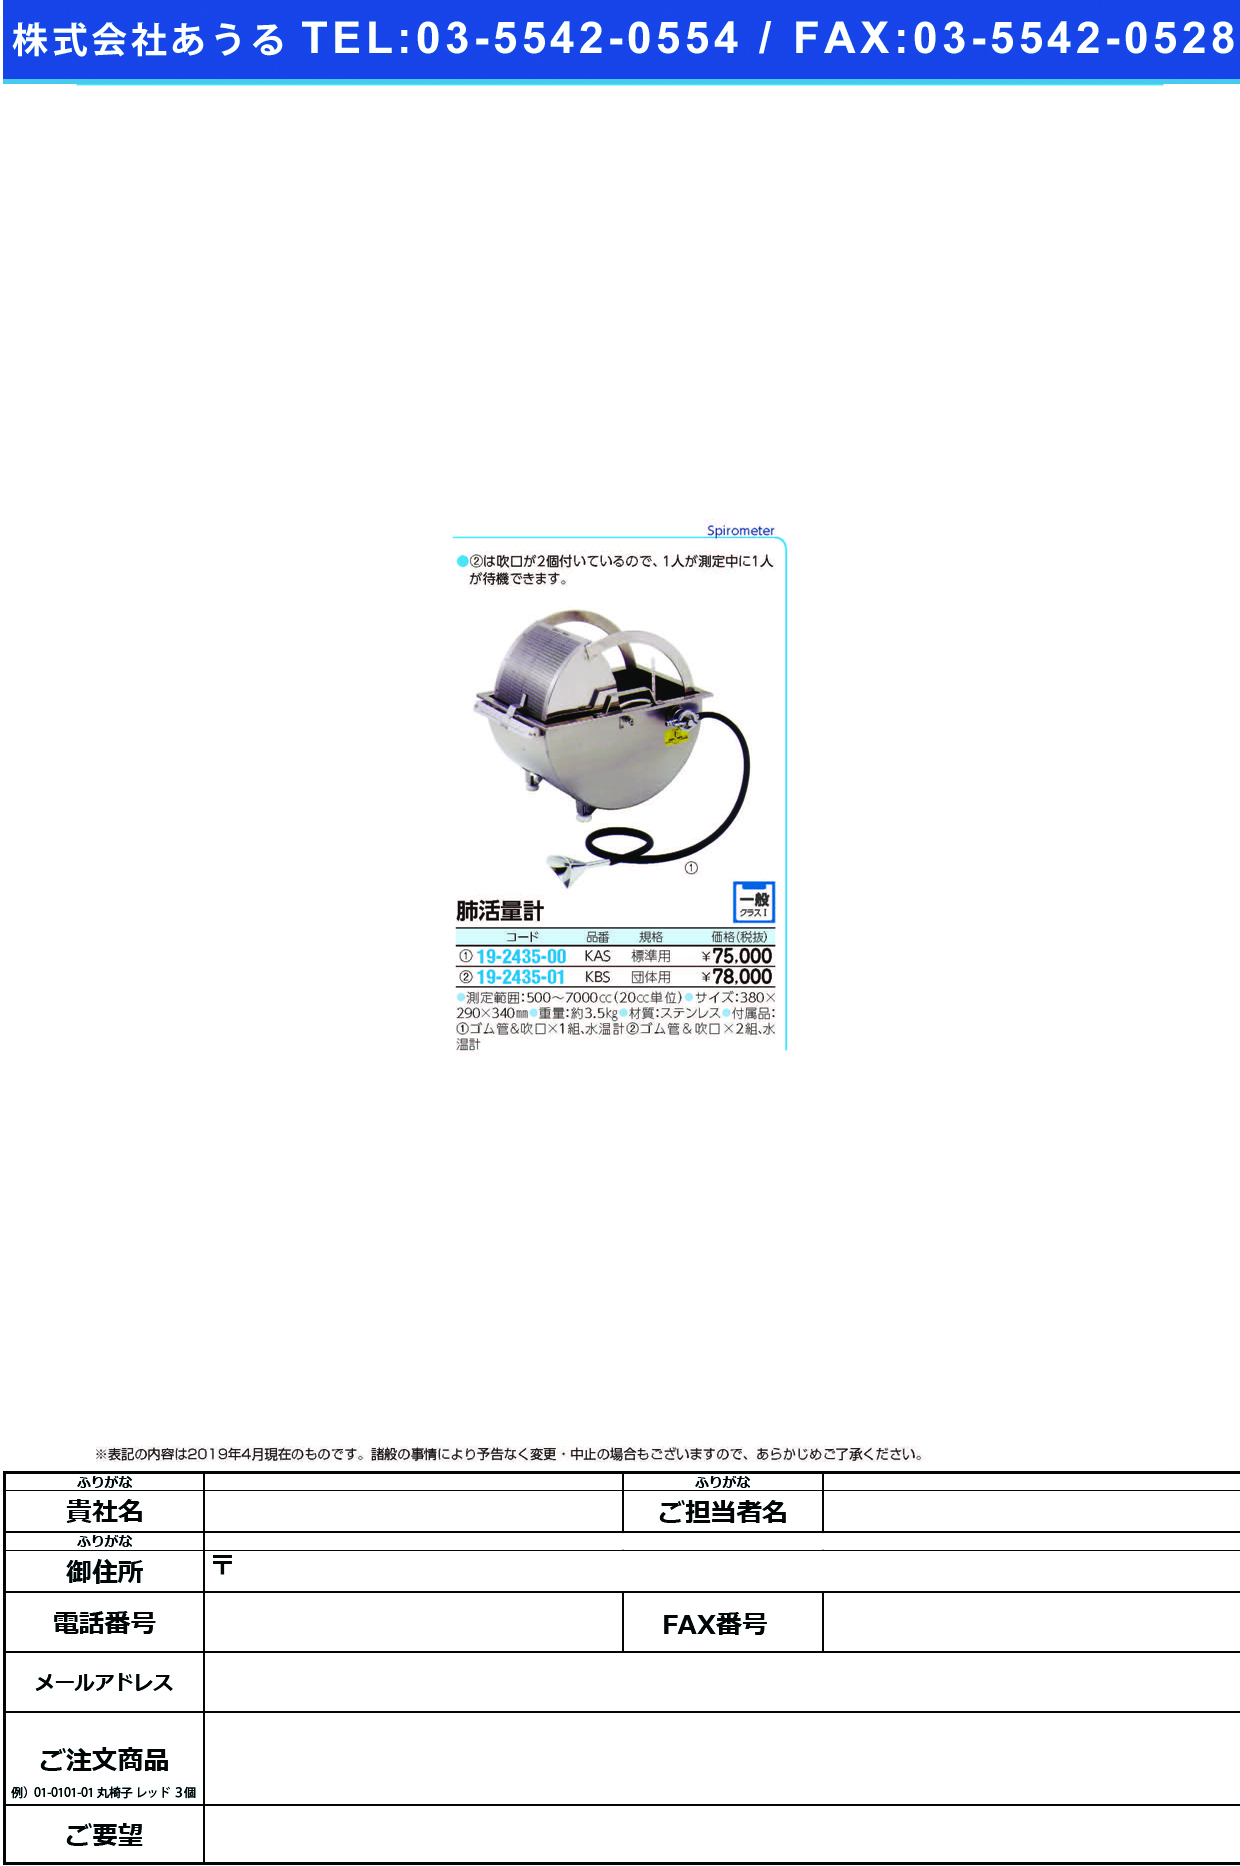 (19-2435-00)肺活量計（オールステンレス） KAS ﾊｲｶﾂﾘｮｳｹｲ(ｵｰﾙｽﾃﾝﾚｽ)【1台単位】【2019年カタログ商品】